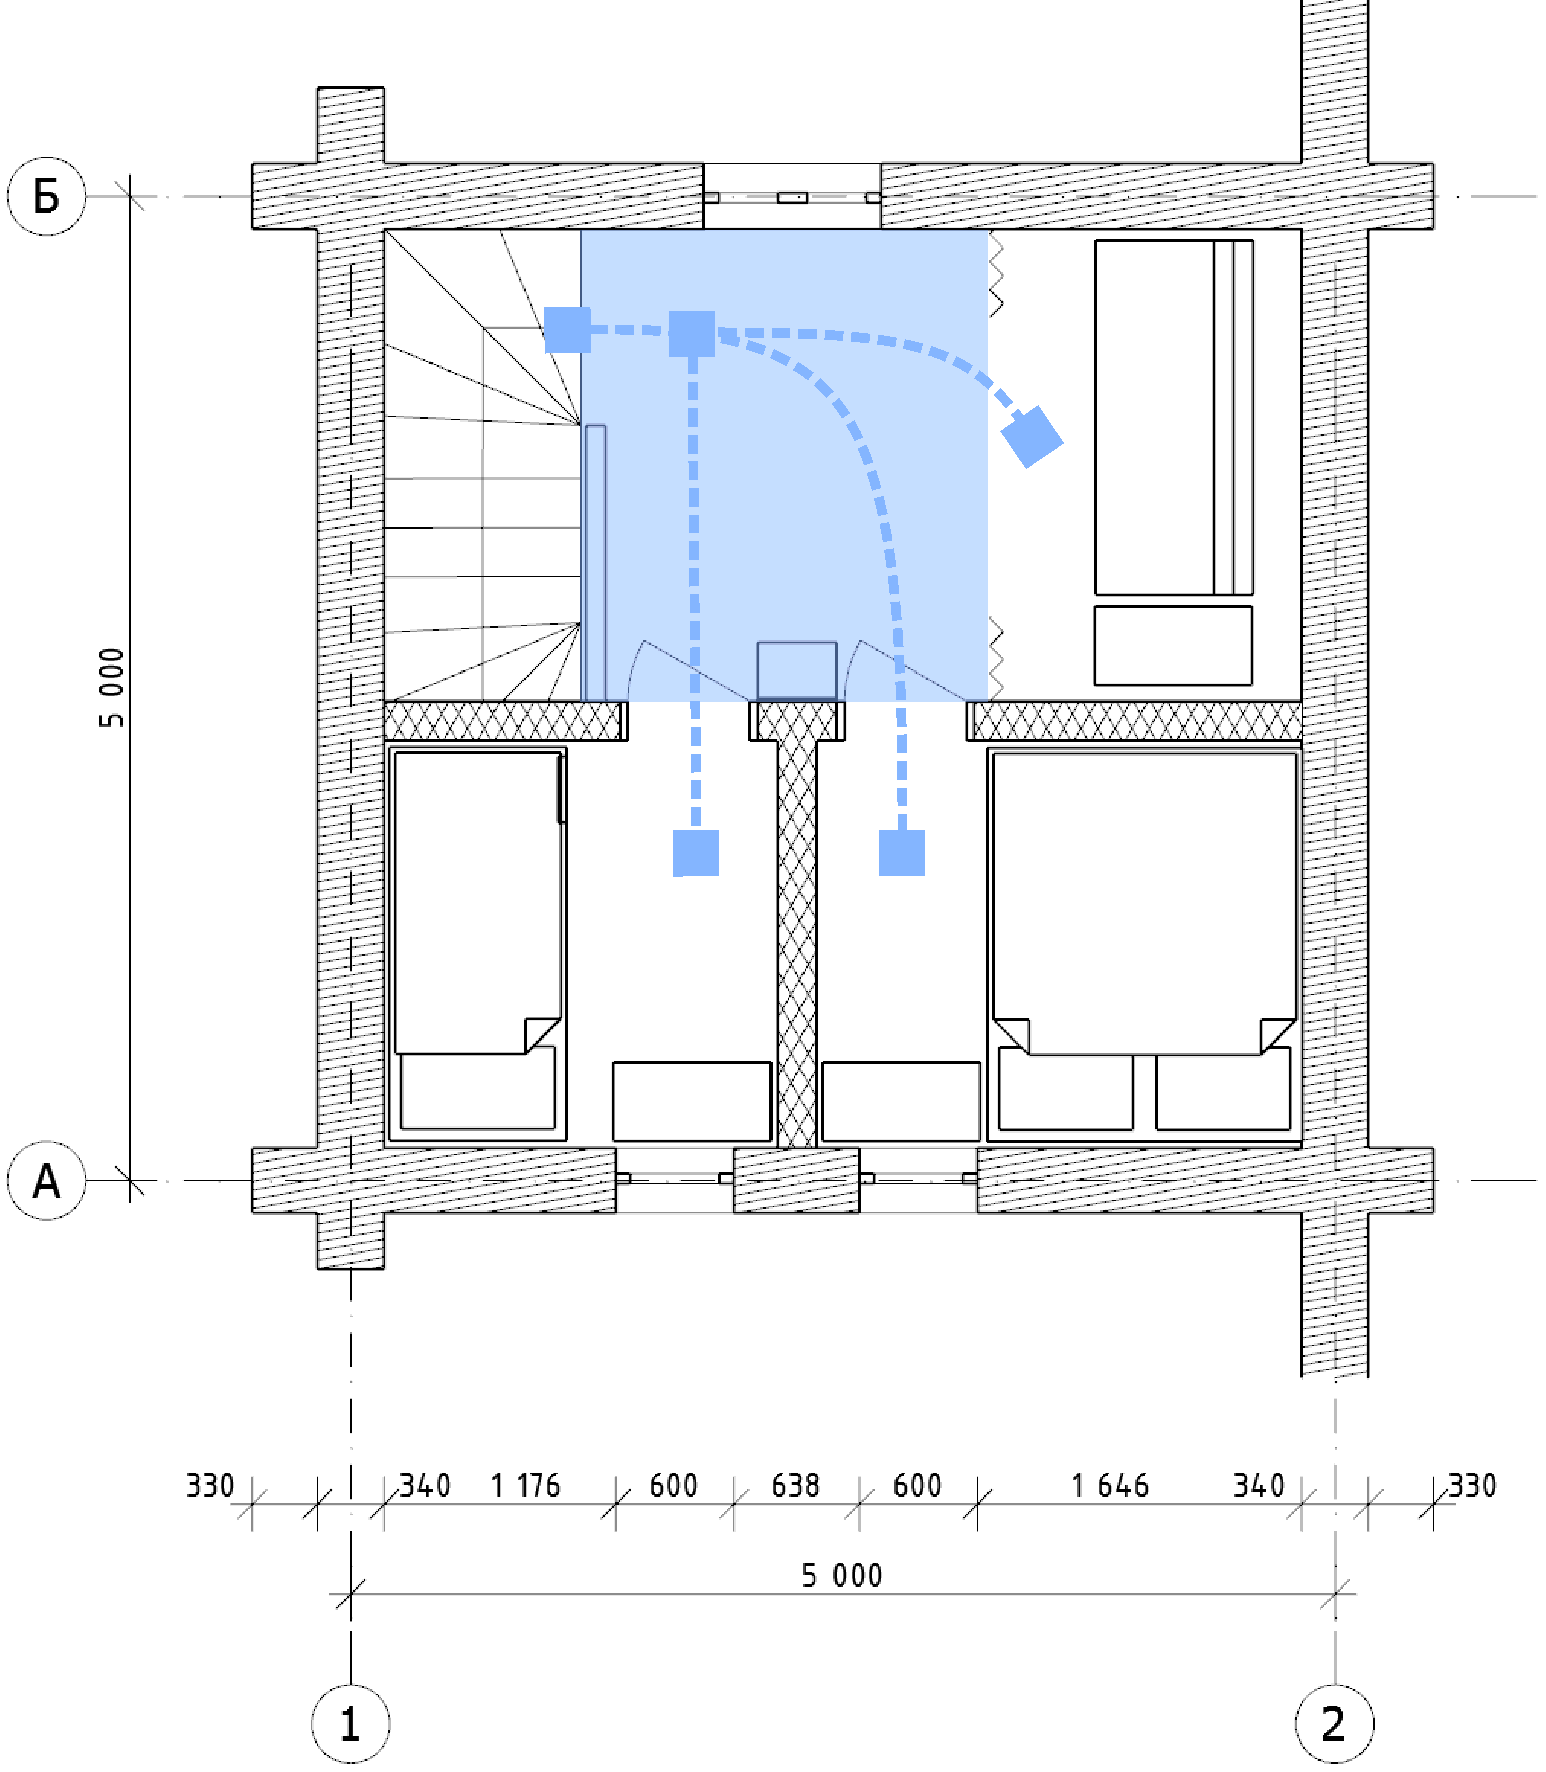 План 2 этажа гостевого дома для 4 гостей с обозначением основных транзитных путей.